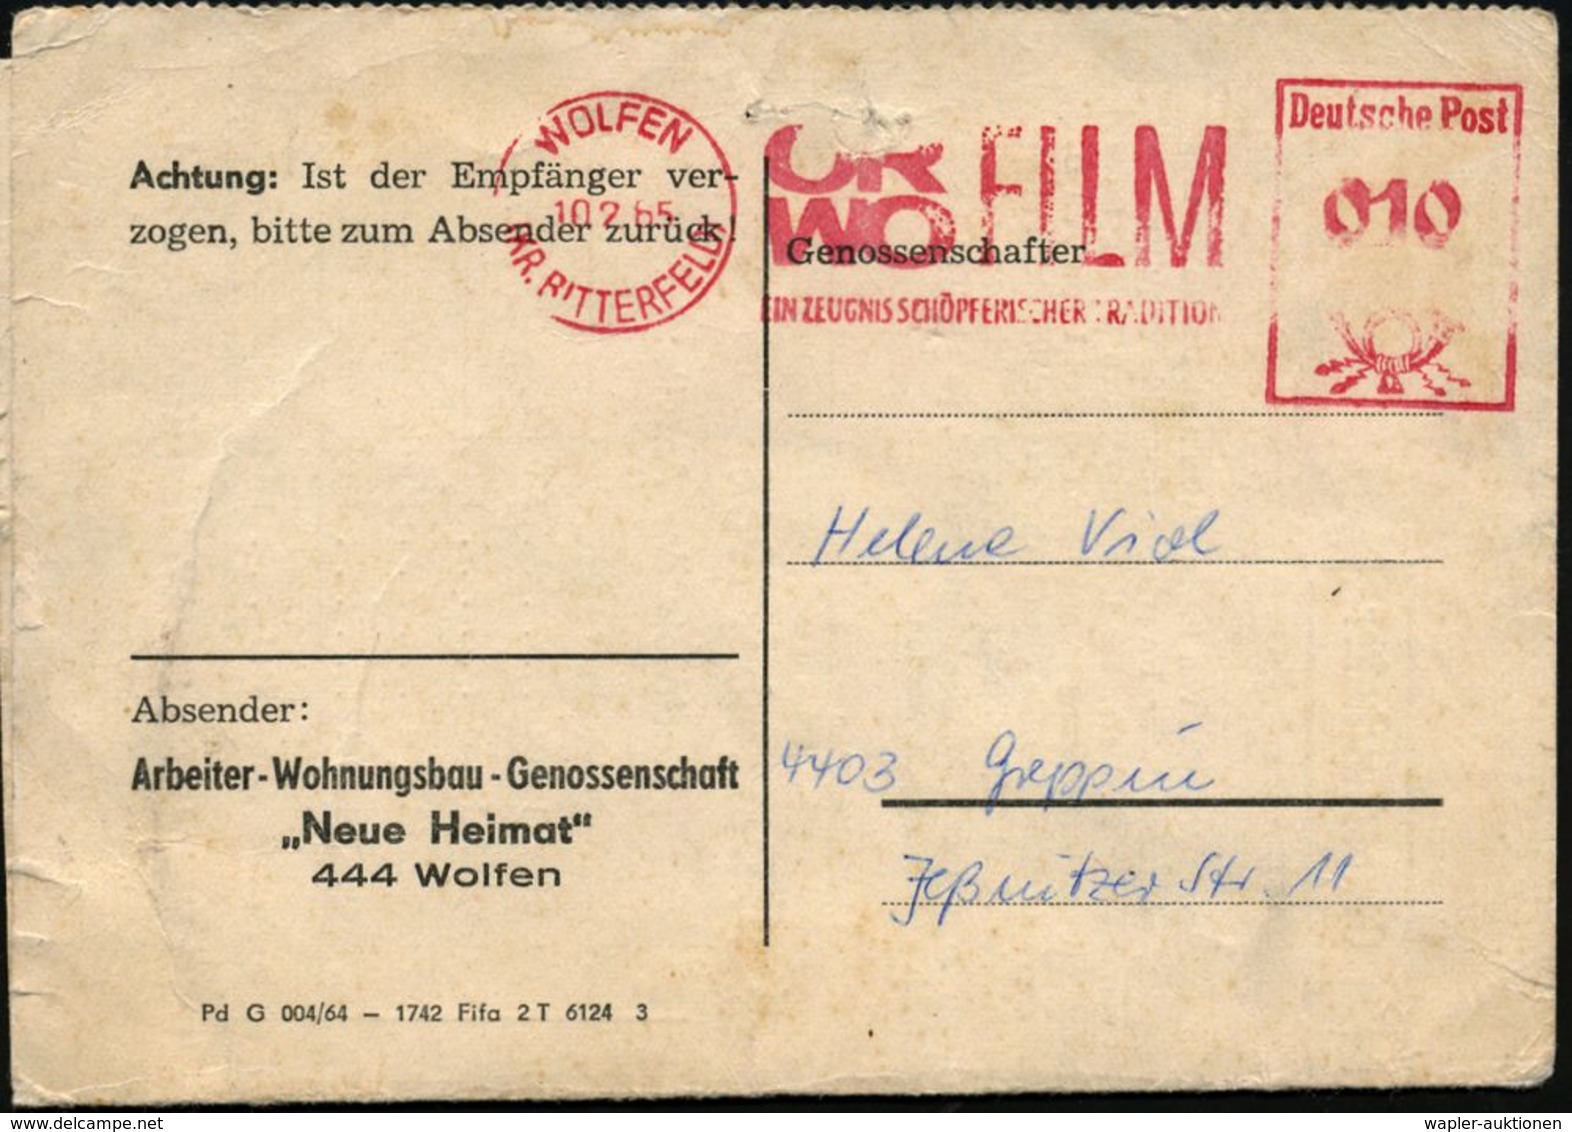 FOTOGRAFIE / KAMERAS / FOTOINDUSTRIE : WOLFEN/ (KR.BITTERFELD)ORWO FILM/ EIN ZEUGNIS SCHÖPFERISCHER TRADITION 1965 (10.2 - Photographie